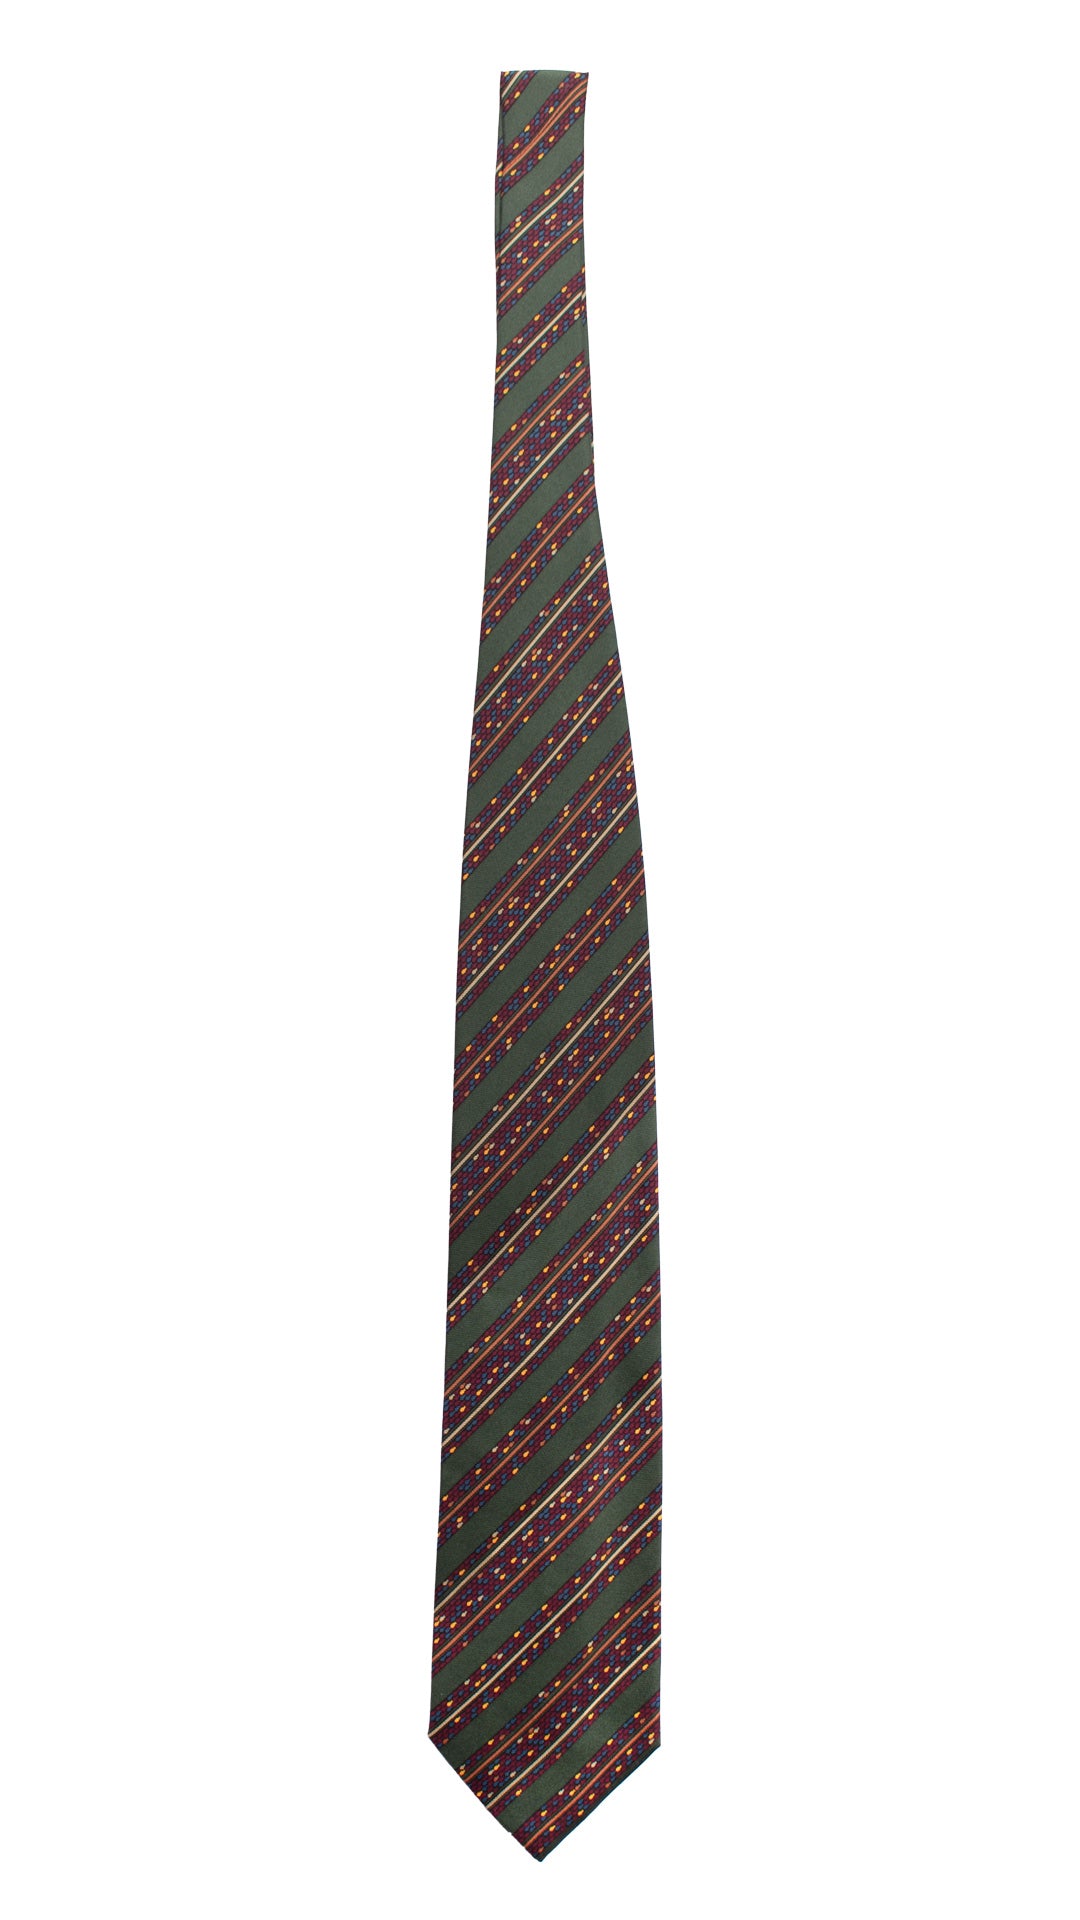 Cravatta Vintage Regimental in Twill di Seta Verde A Righe Multicolor CV817 Intera